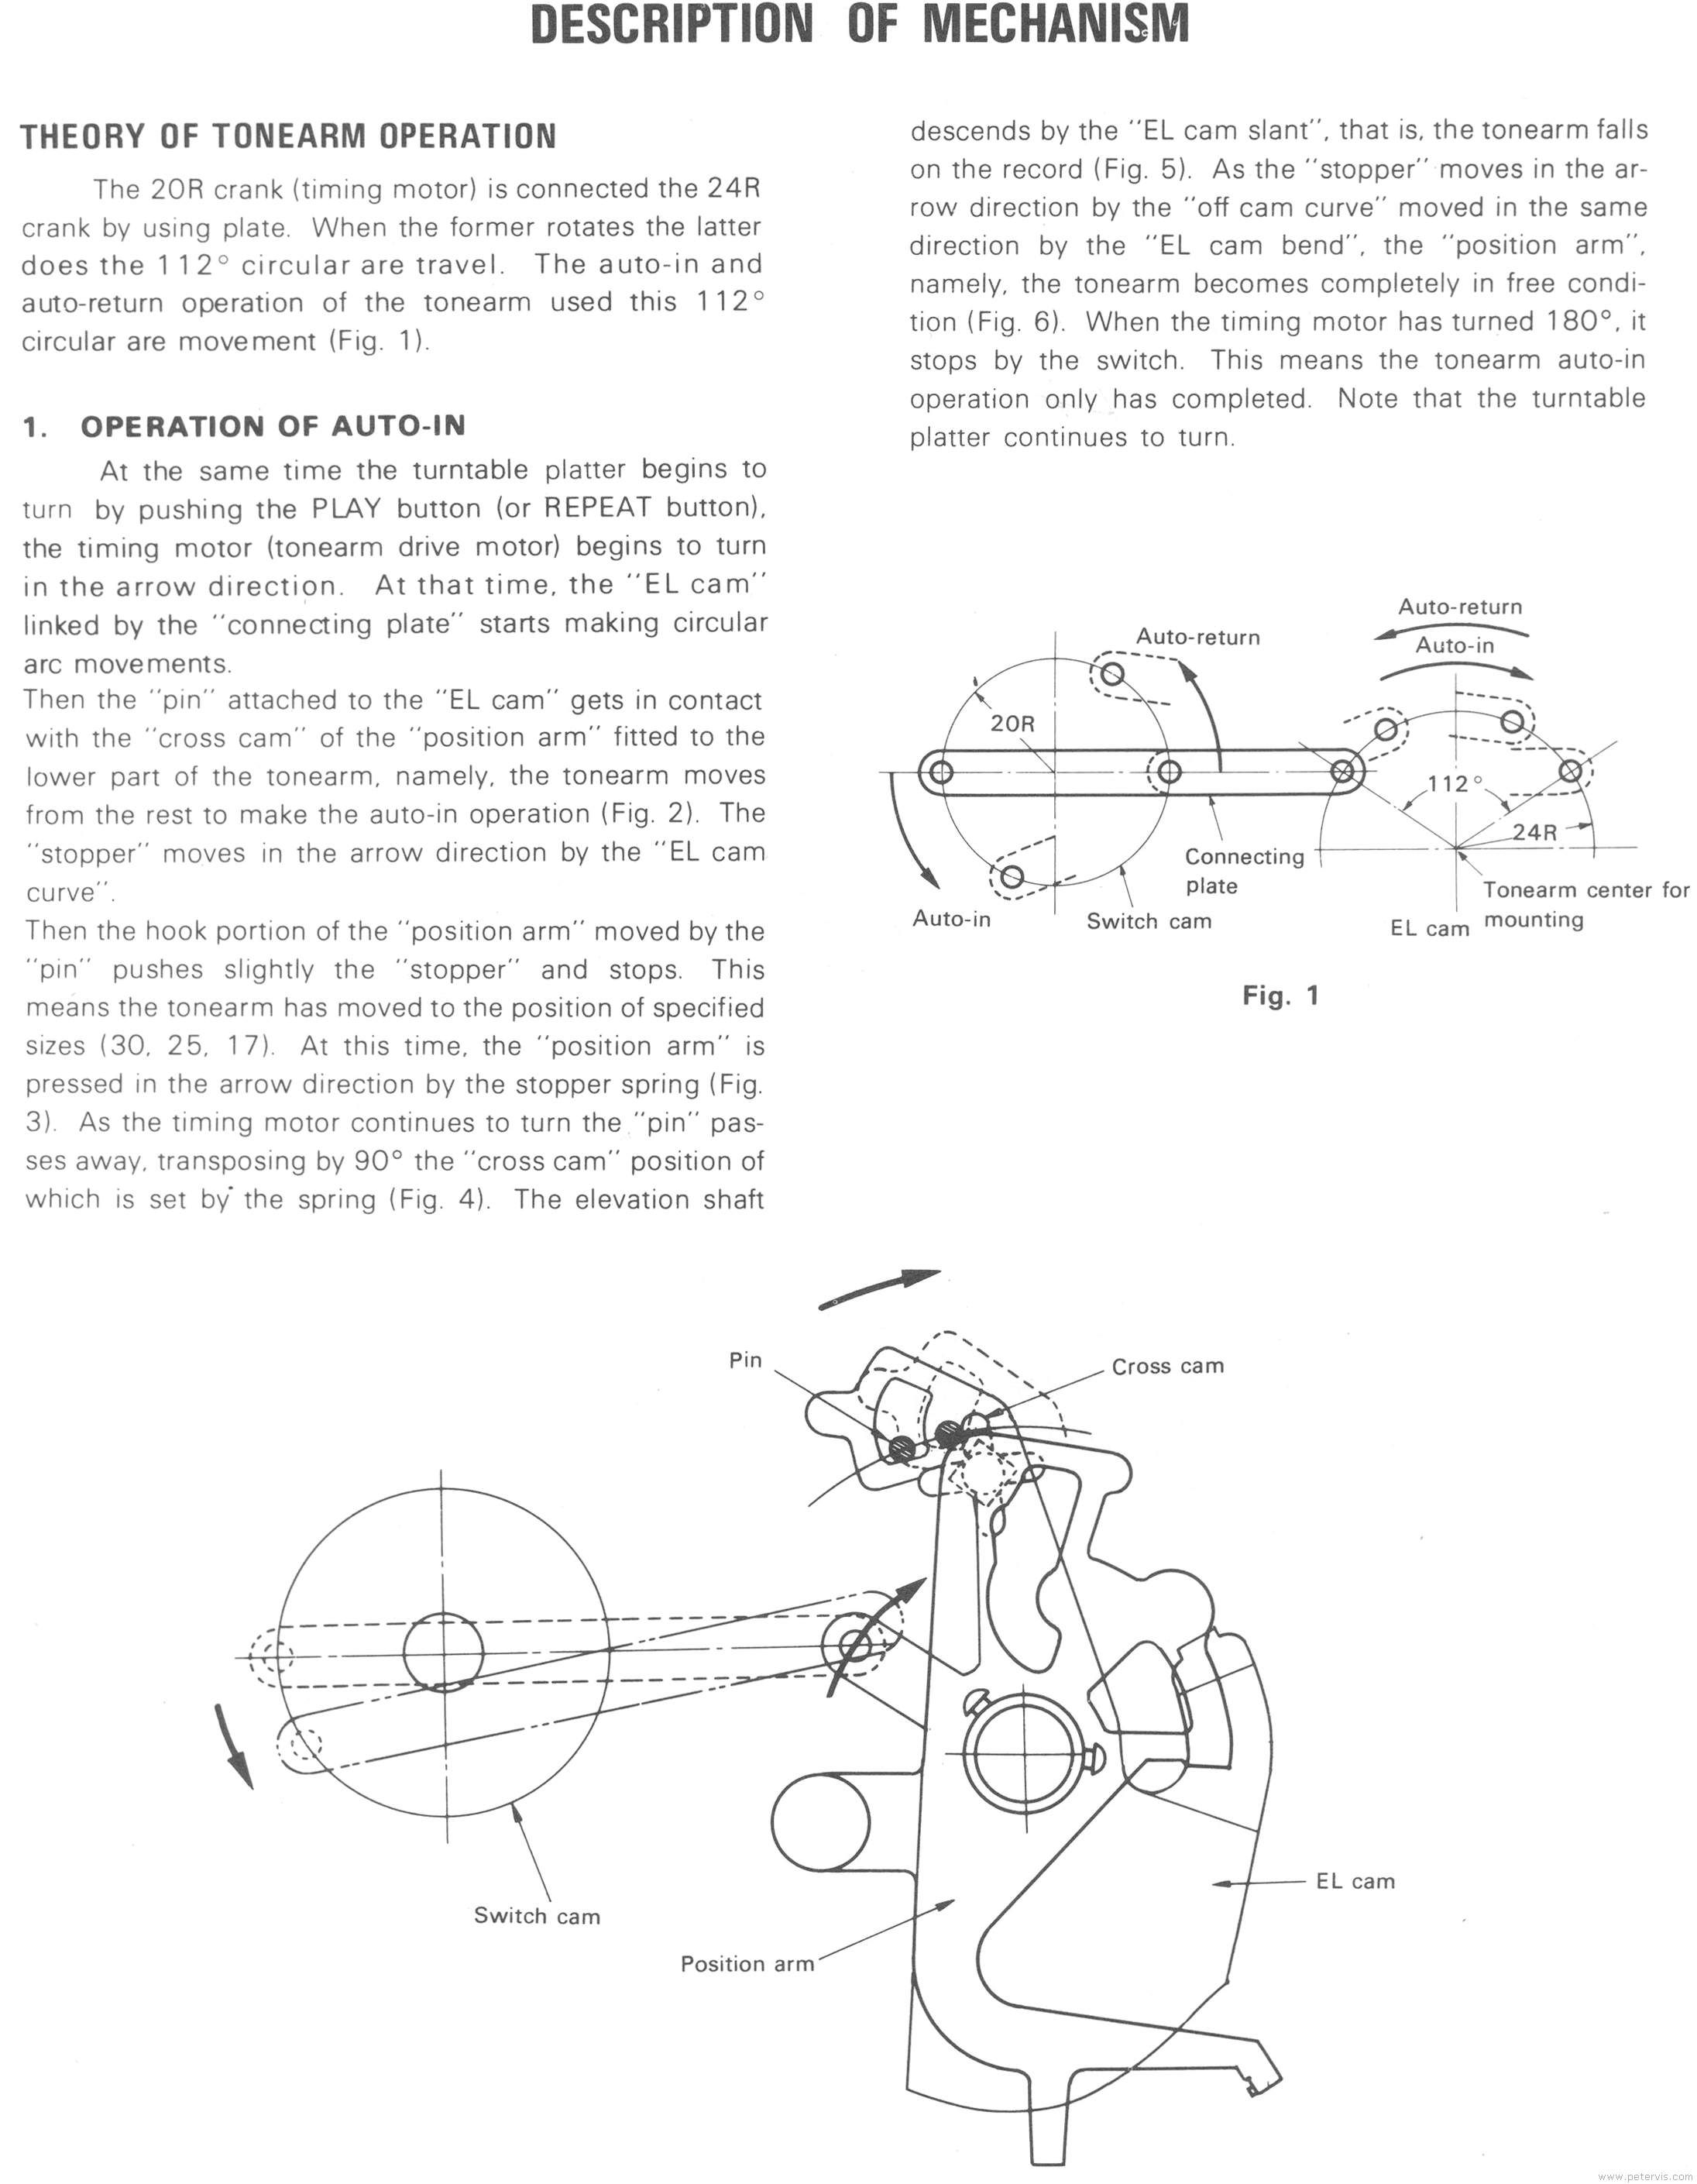 Description of Mechanism